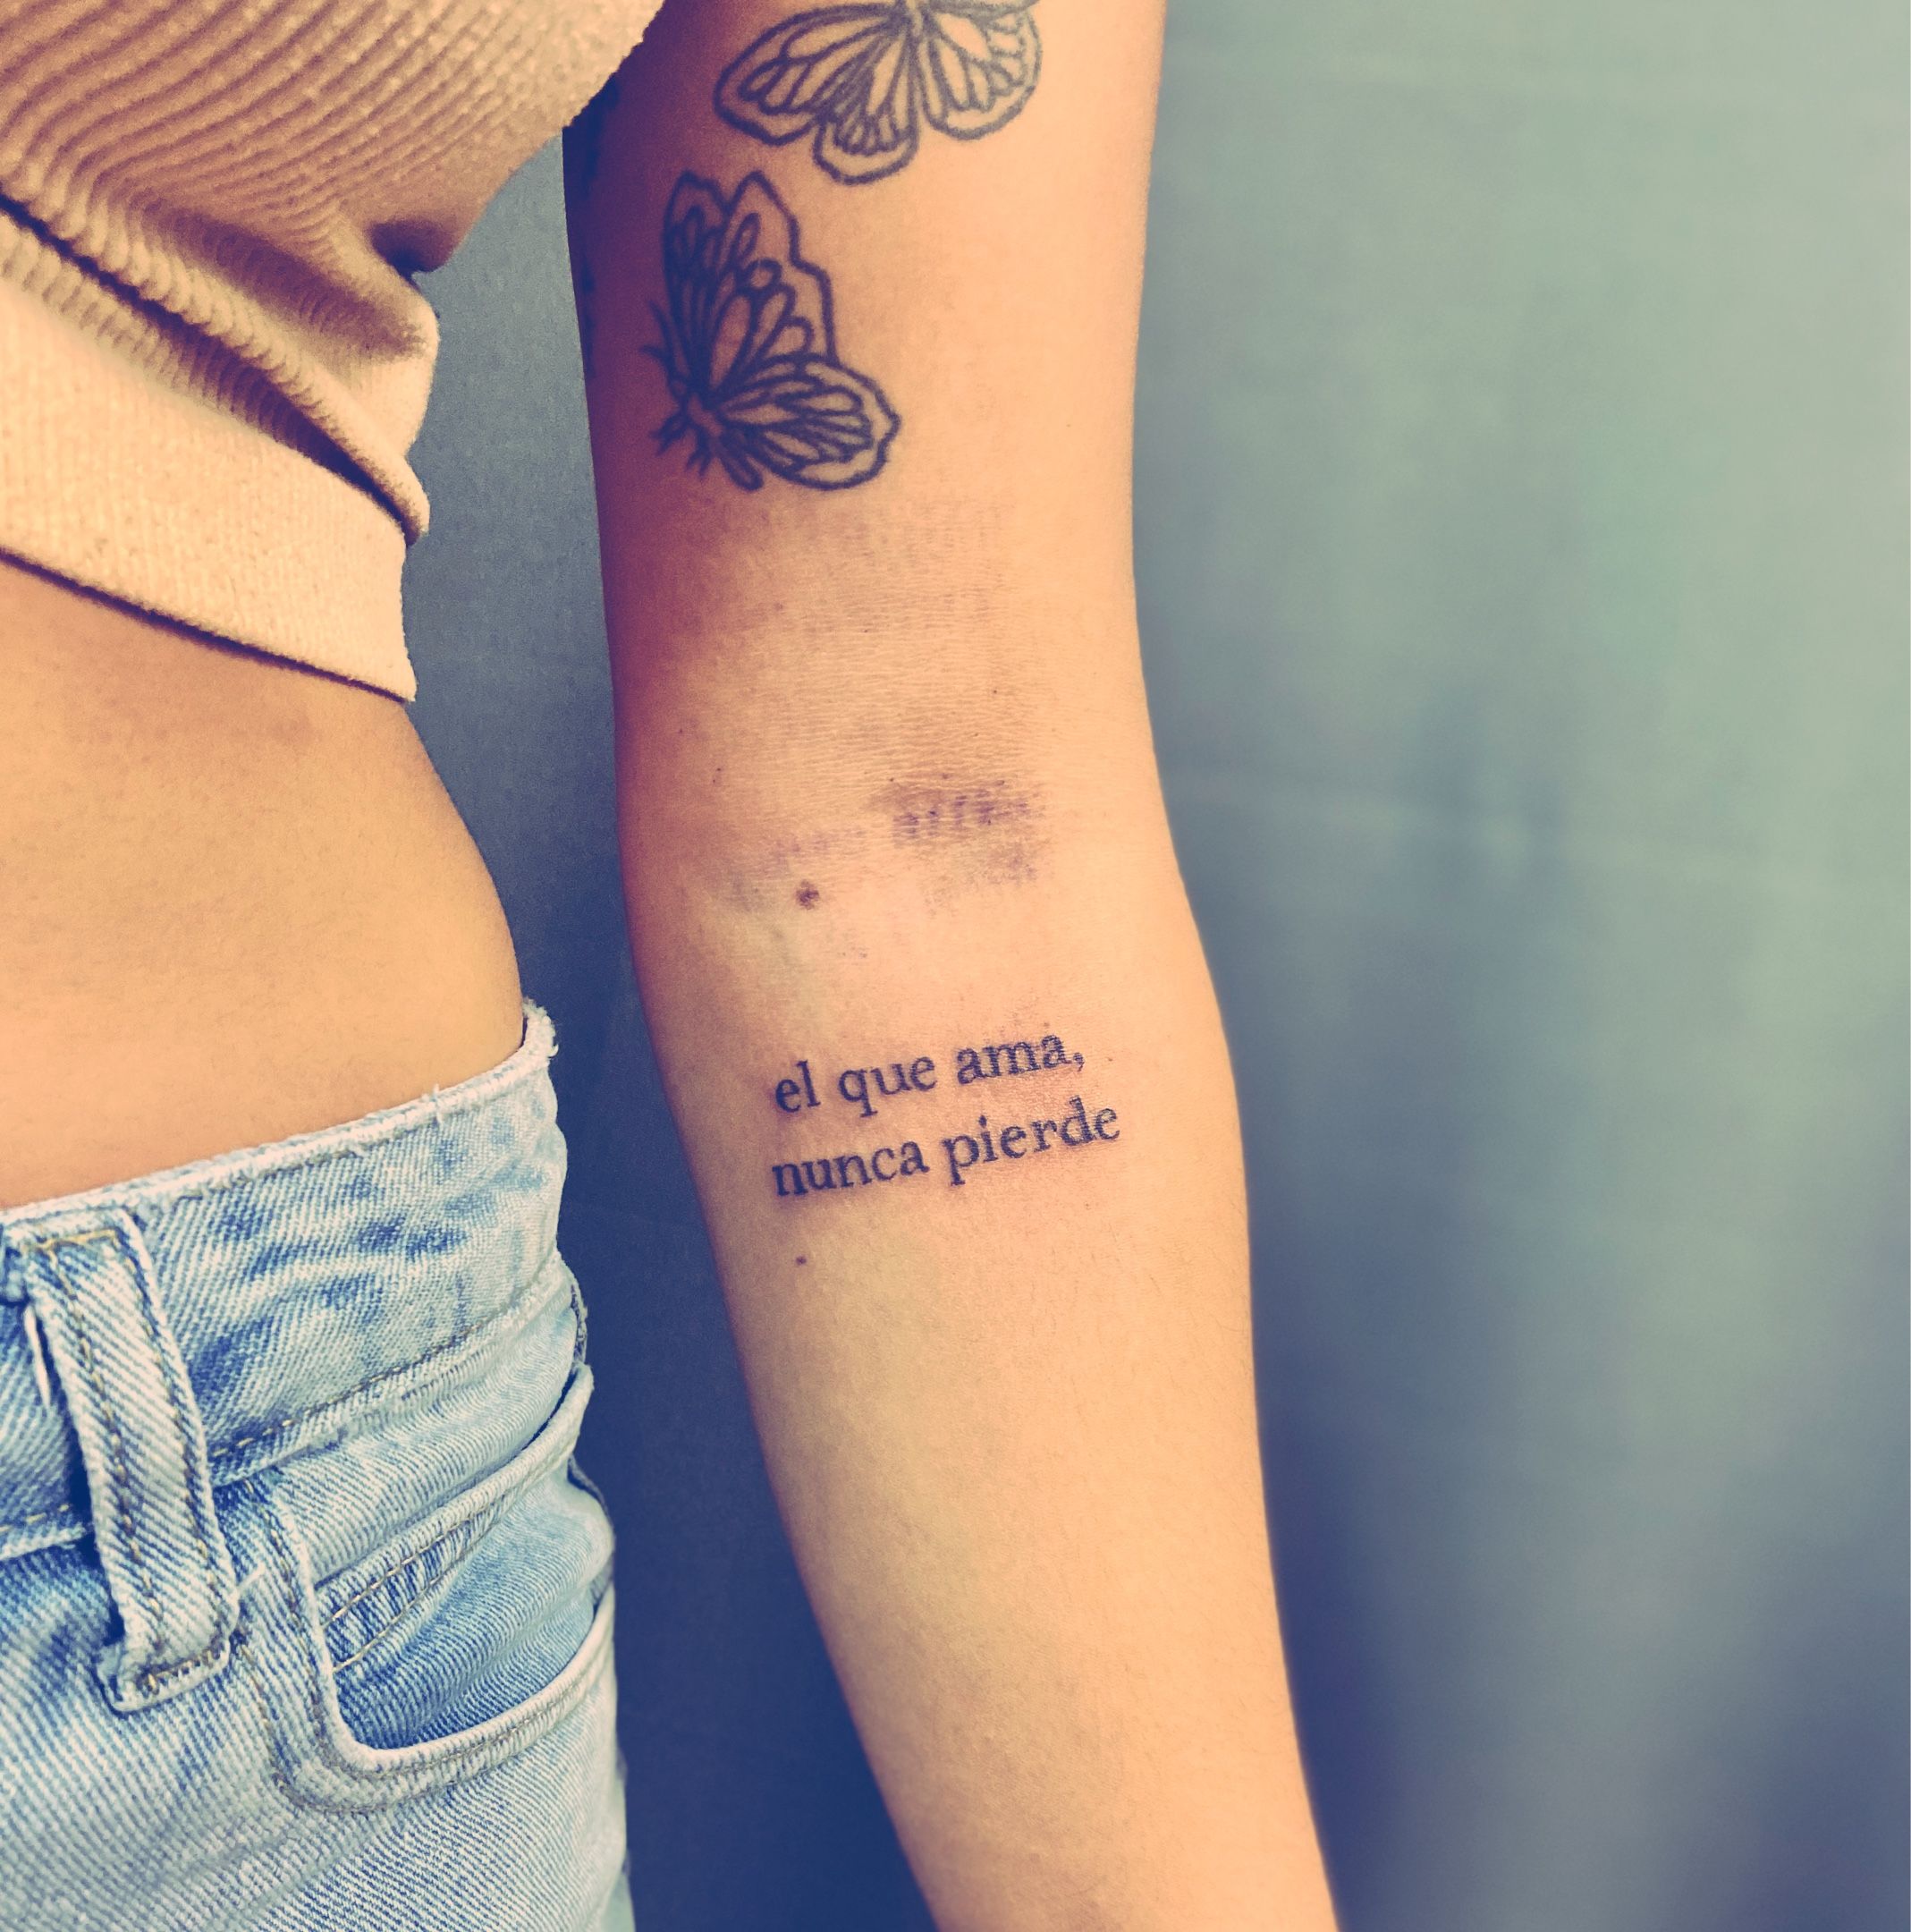 El que ama nunca pierde tatuaje